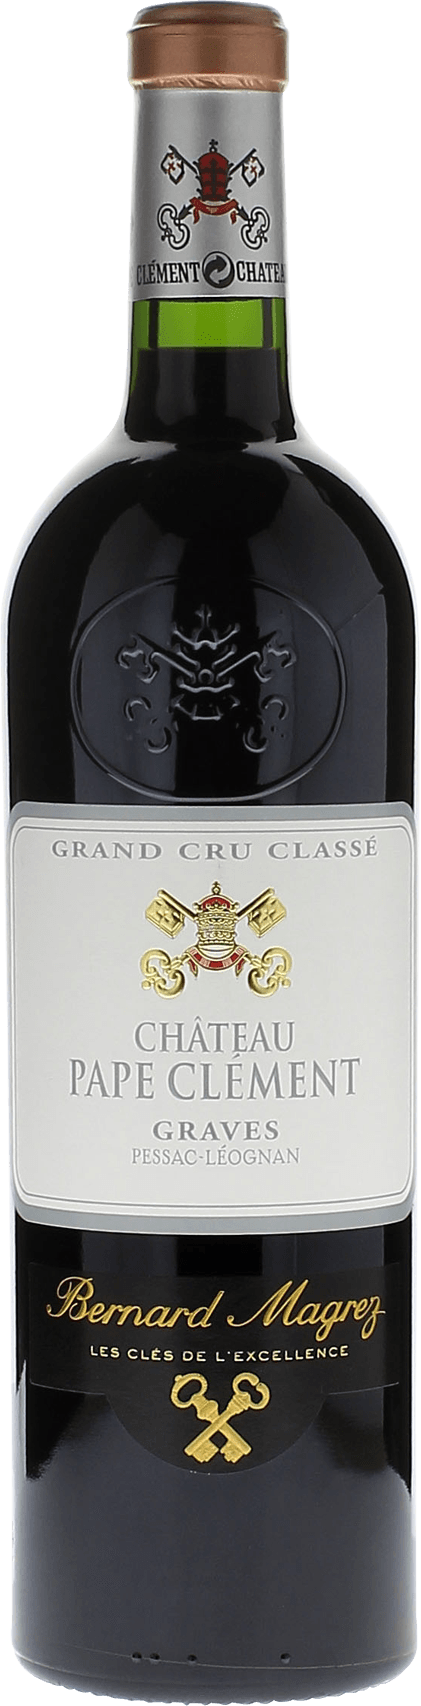 Pape clement rouge 2000 Grand Cru Class Graves, Bordeaux rouge